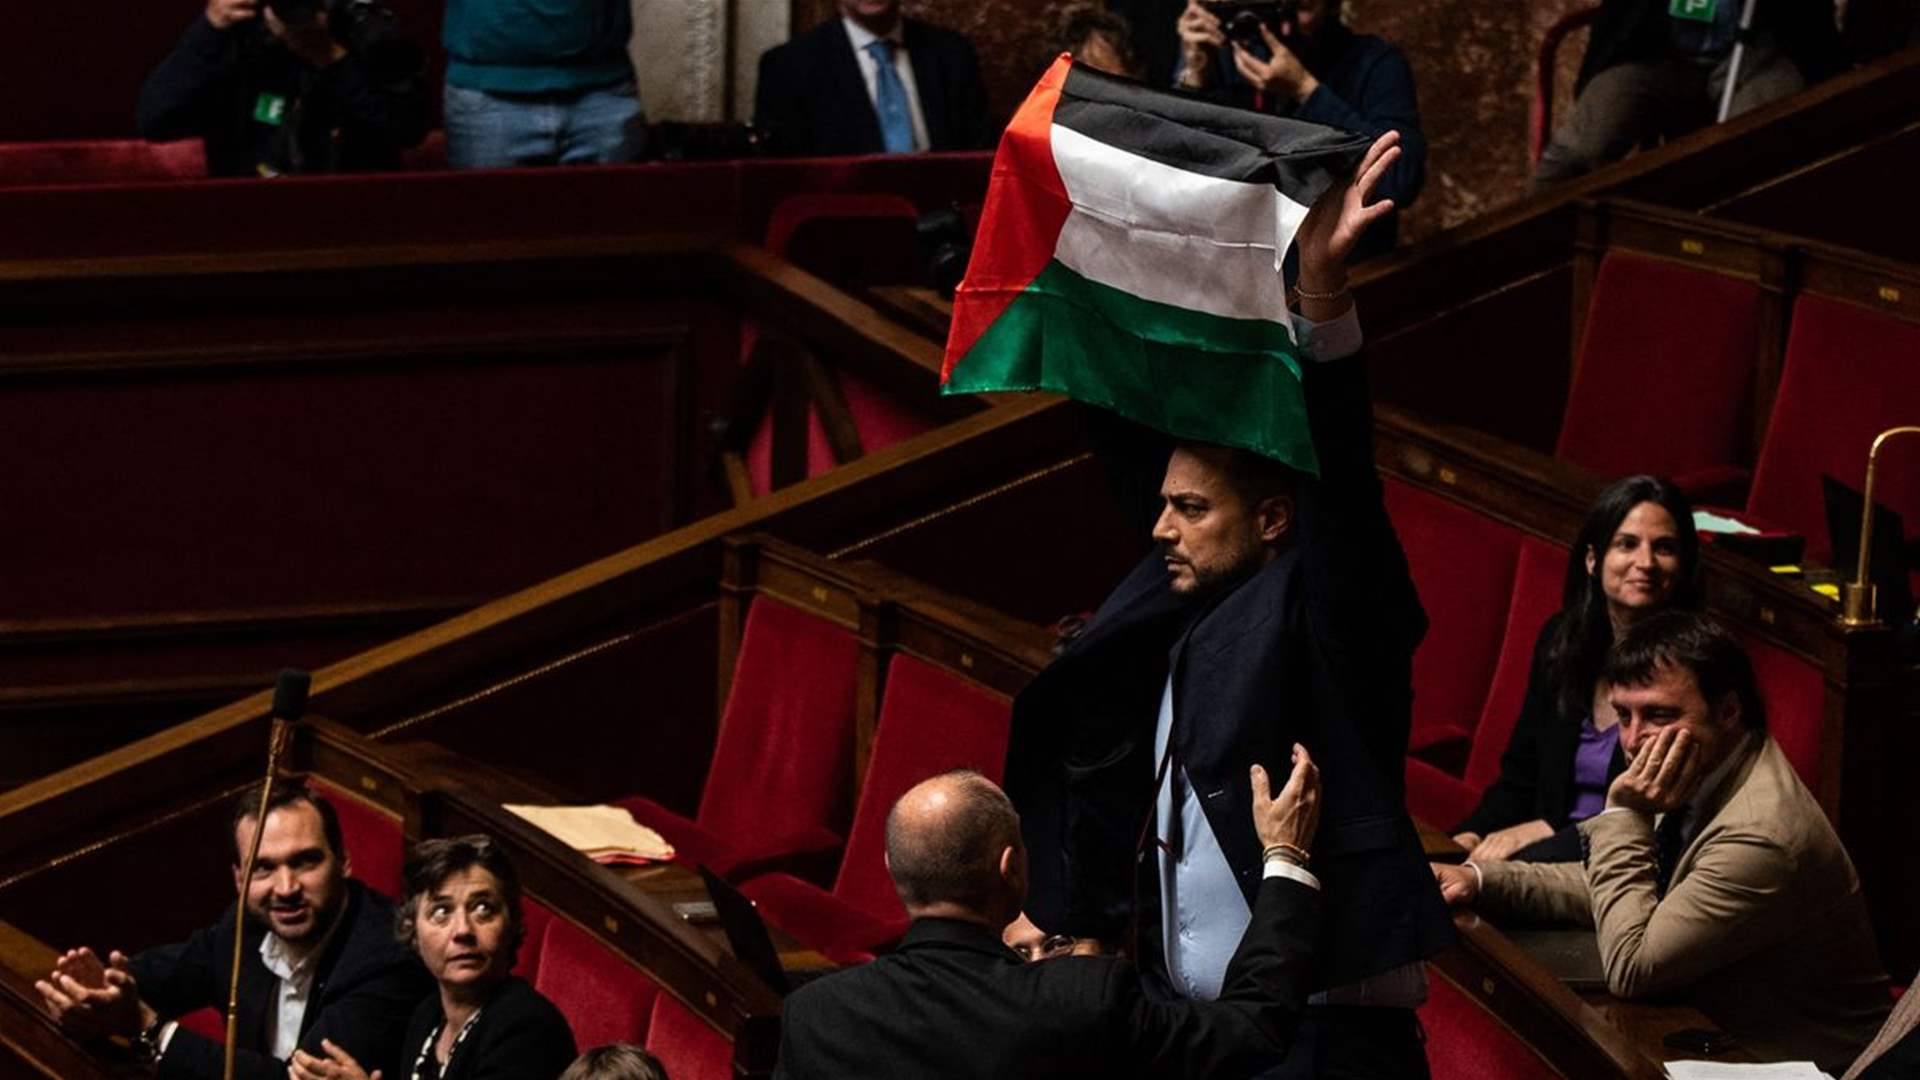 فرانسیسی قانون ساز پارلیمنٹ میں رکن پارلیمنٹ فلسطینی پرچم لہرانے پر معطل